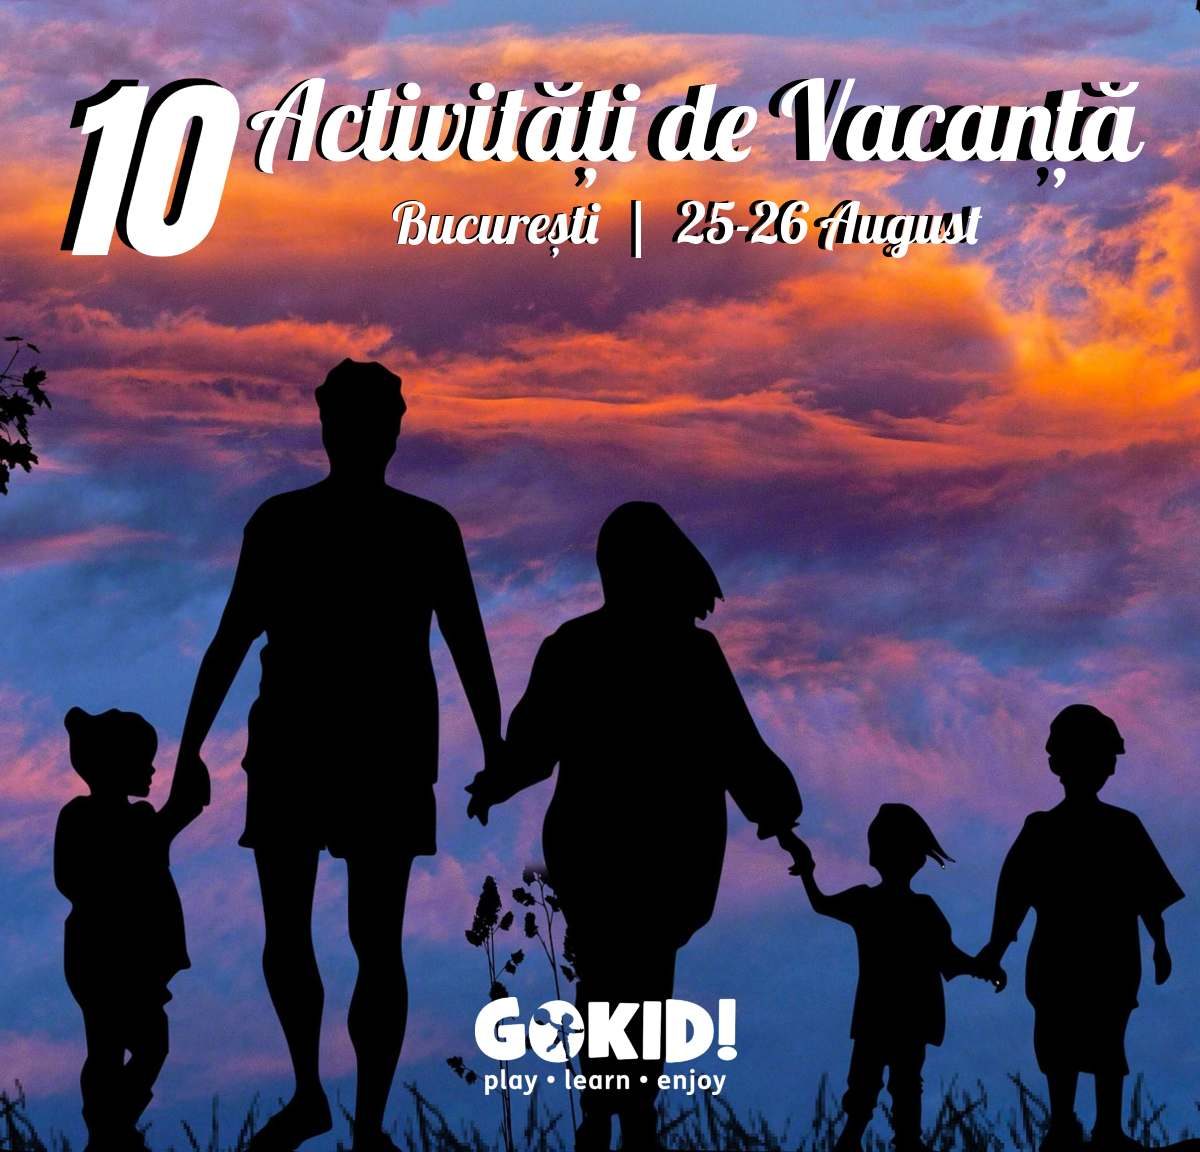 10 Activitati de Vacanta, recomandate de GOKID - 25-26 August | Bucuresti